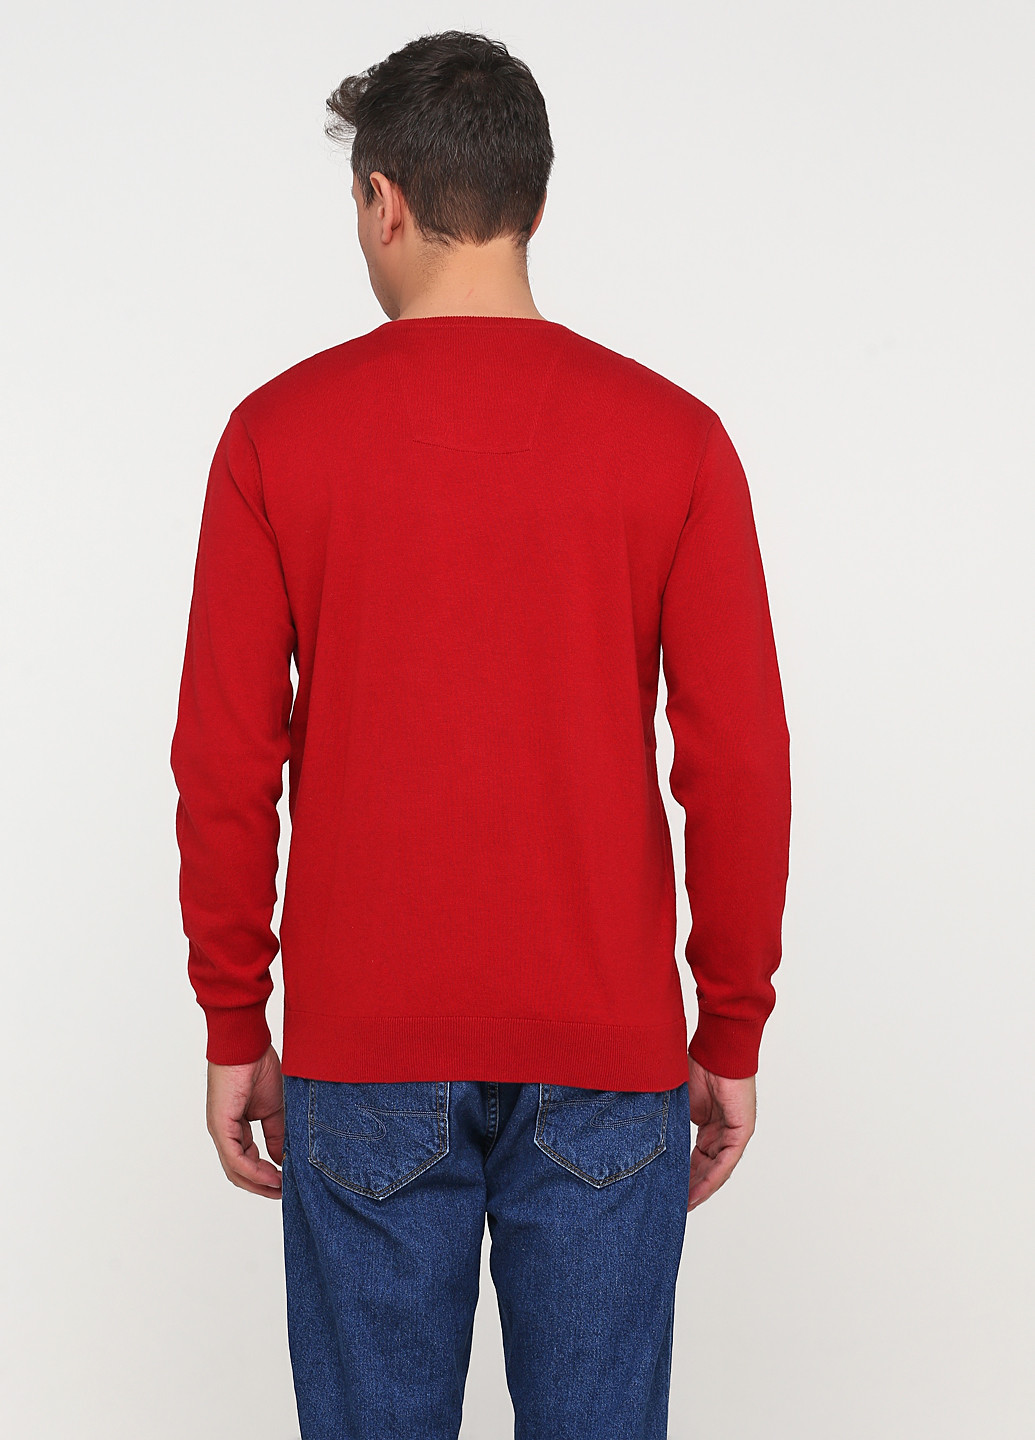 Вишневый демисезонный пуловер пуловер Tom Tailor